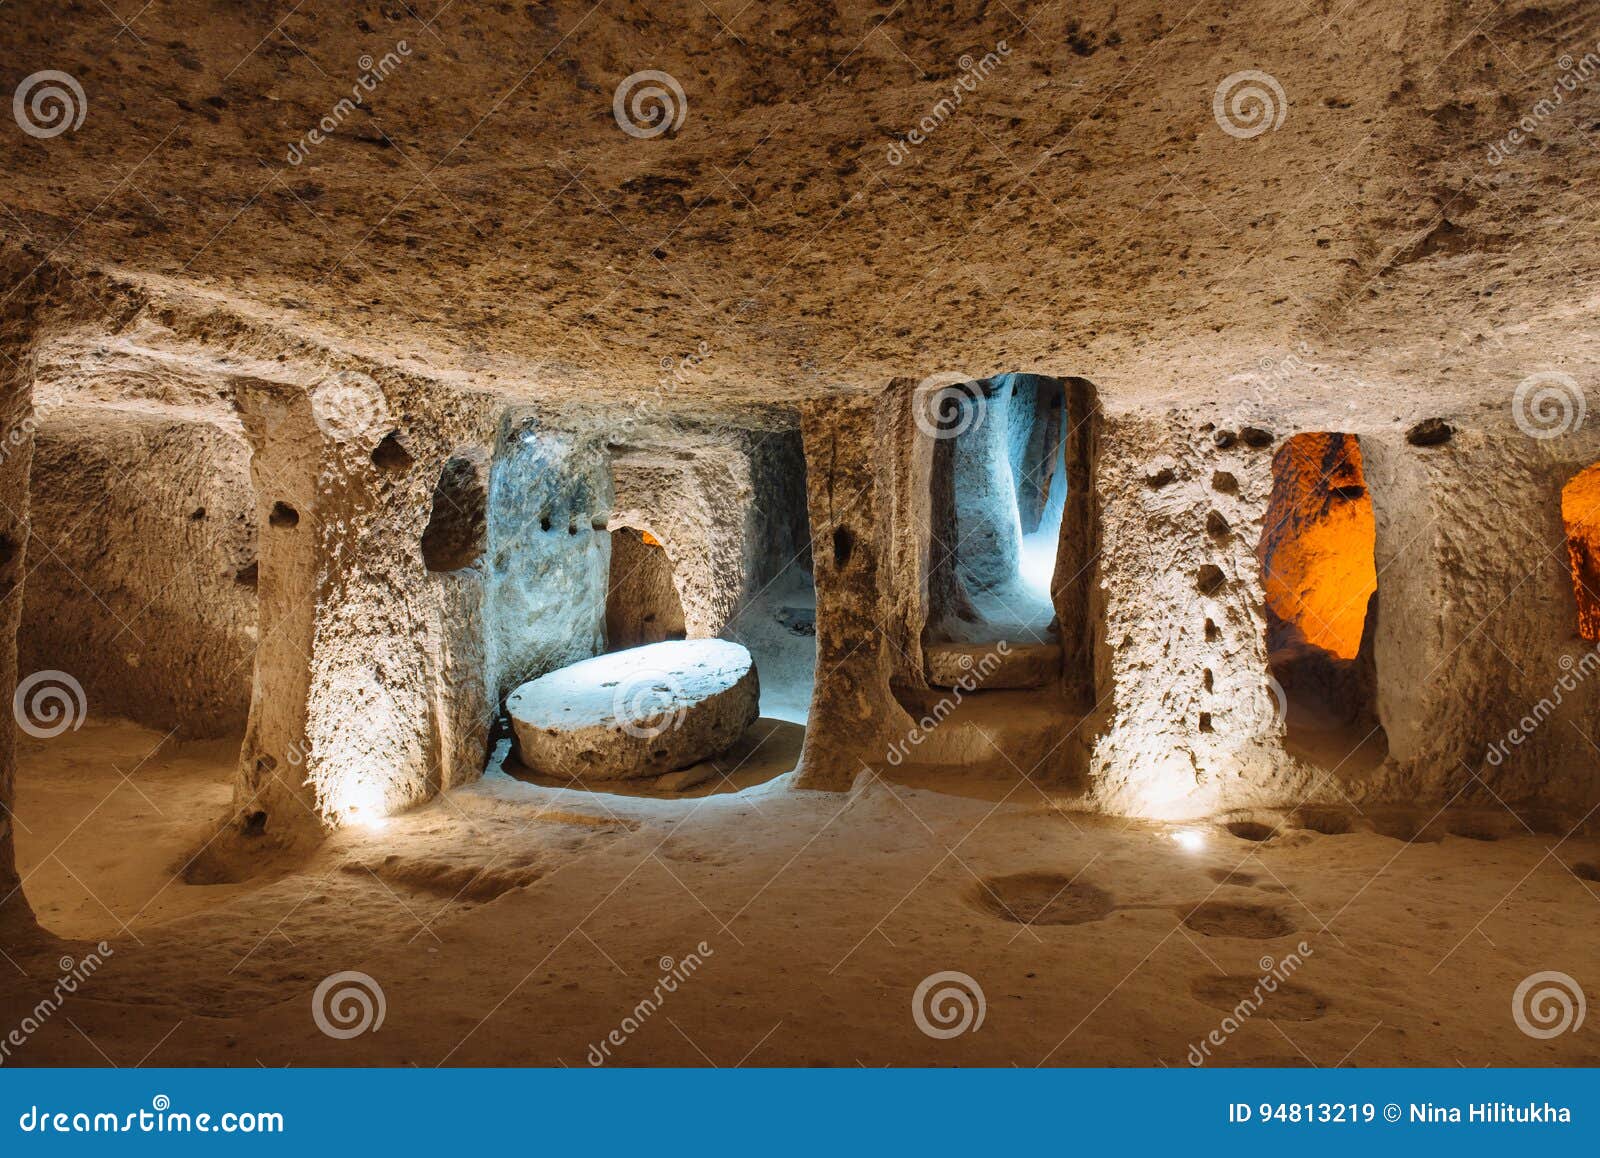 derinkuyu underground city in cappadocia, turkey.